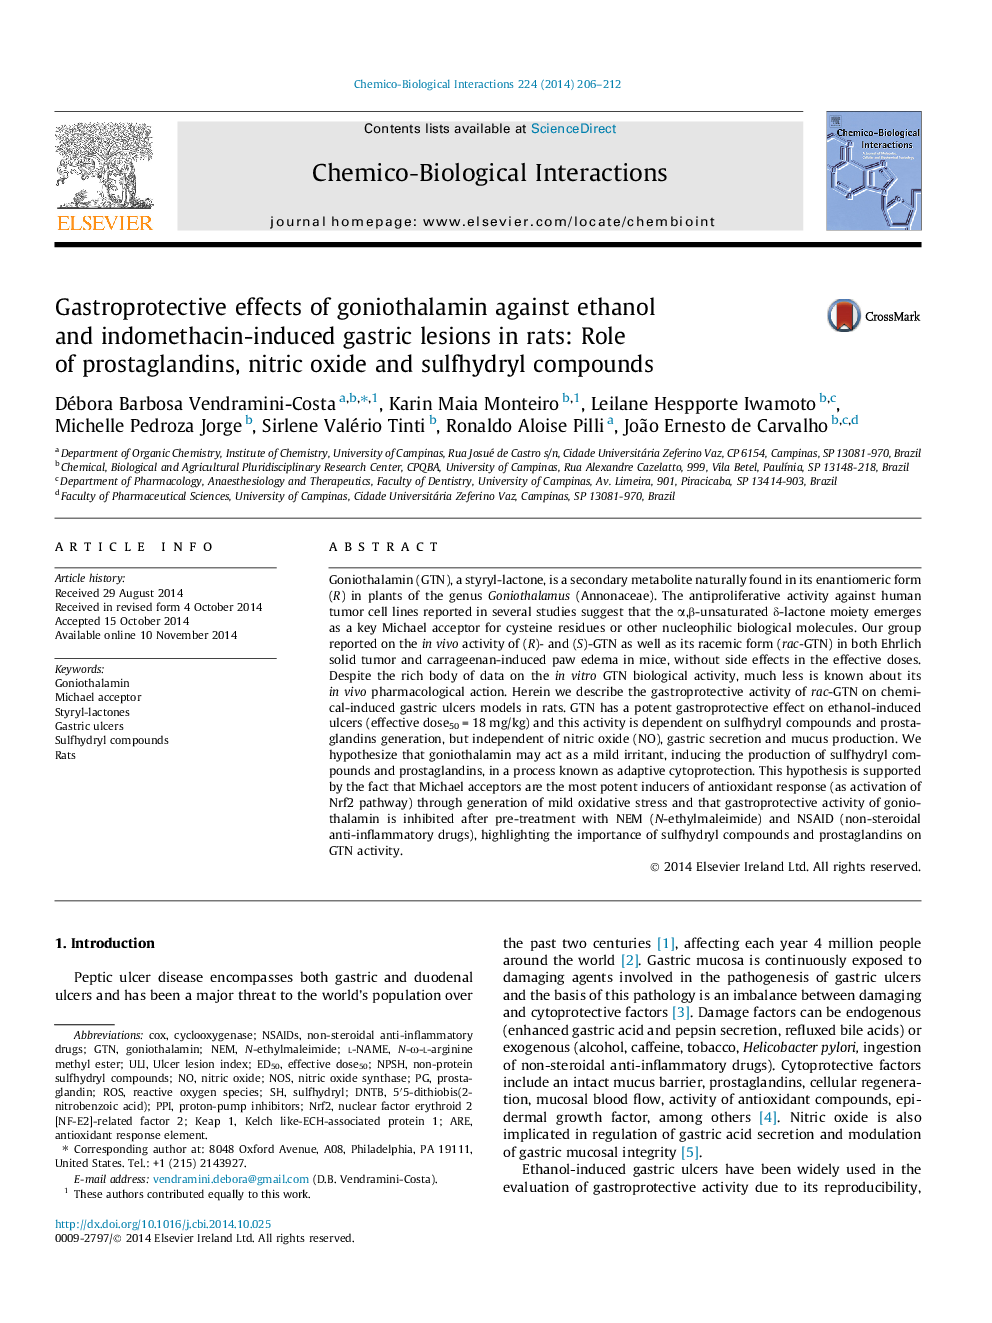 اثرات گاستروپینتیک گنوتیلامین در برابر اتانول و ضایعات معده ناشی از اندومتاسین در موش صحرایی: نقش پروستاگلاندین ها، ترکیبات نیتریک اکسید و سولفیدریل 